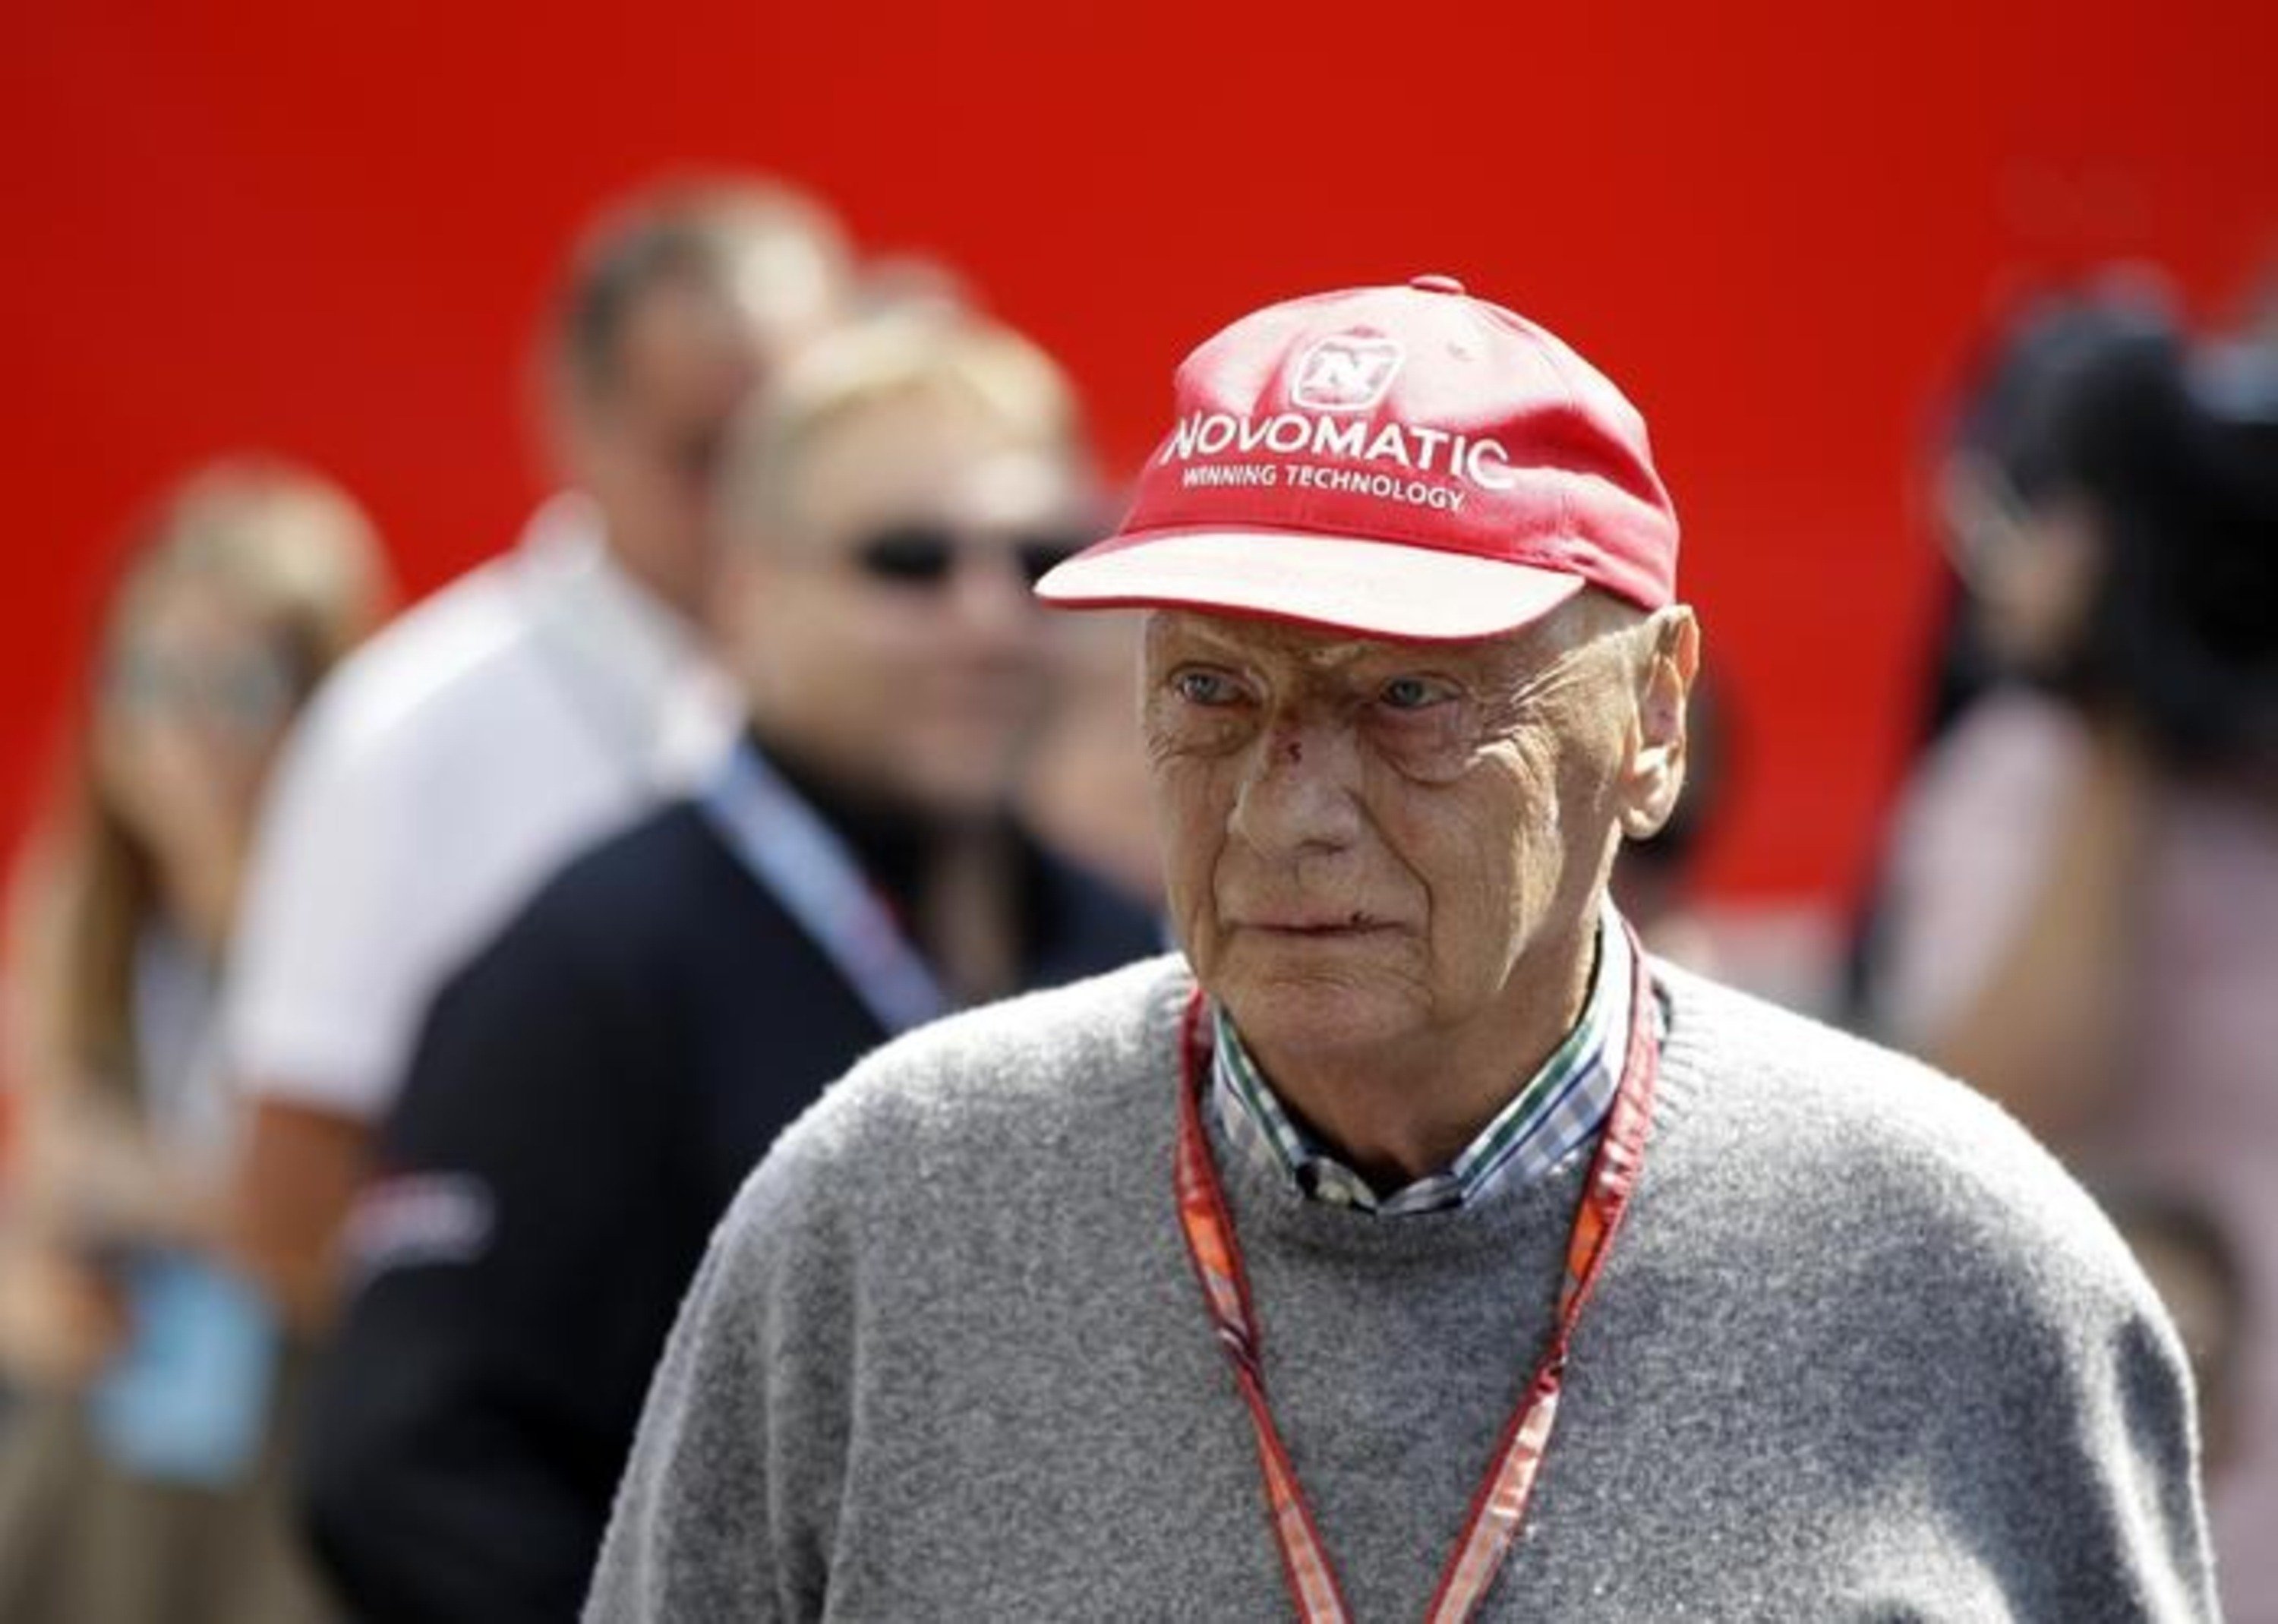 Funerali Niki Lauda: oggi in Duomo a Vienna, con la tuta da pilota Ferrari